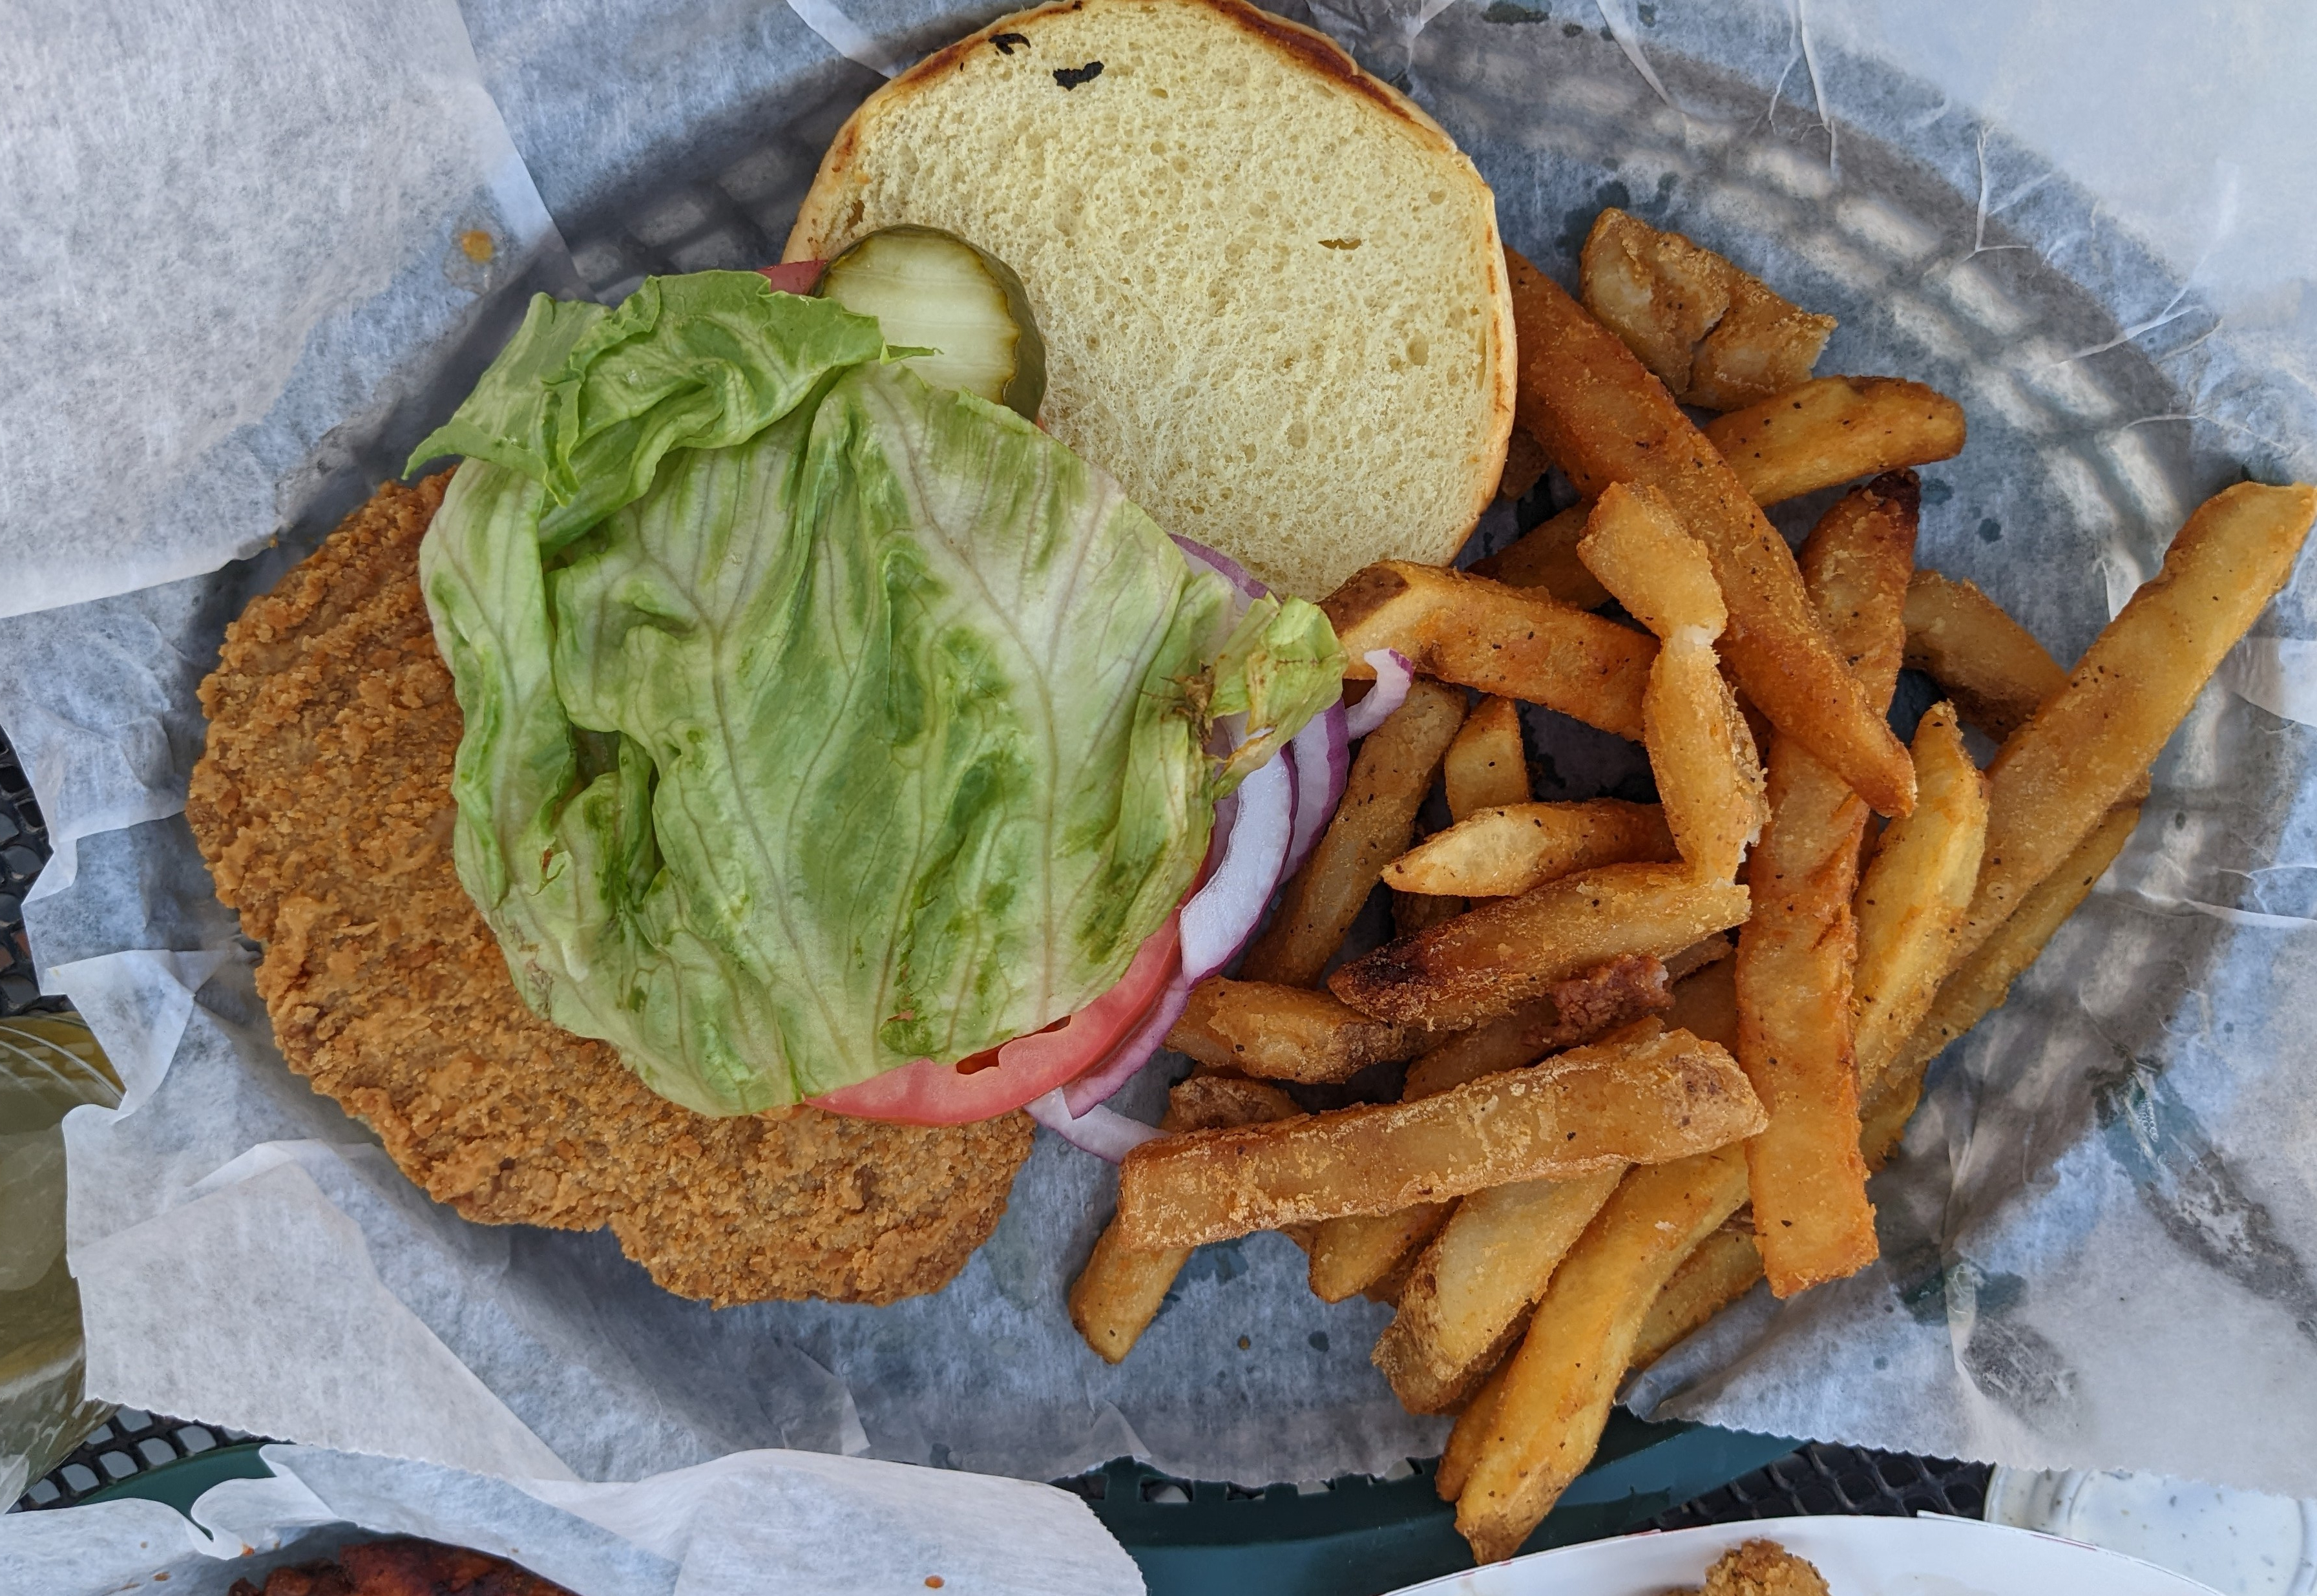 An overhead photo shows Bunny's breaded pork tenderloin sandwich with lettuce and fries. Photo by Tayler Neumann.